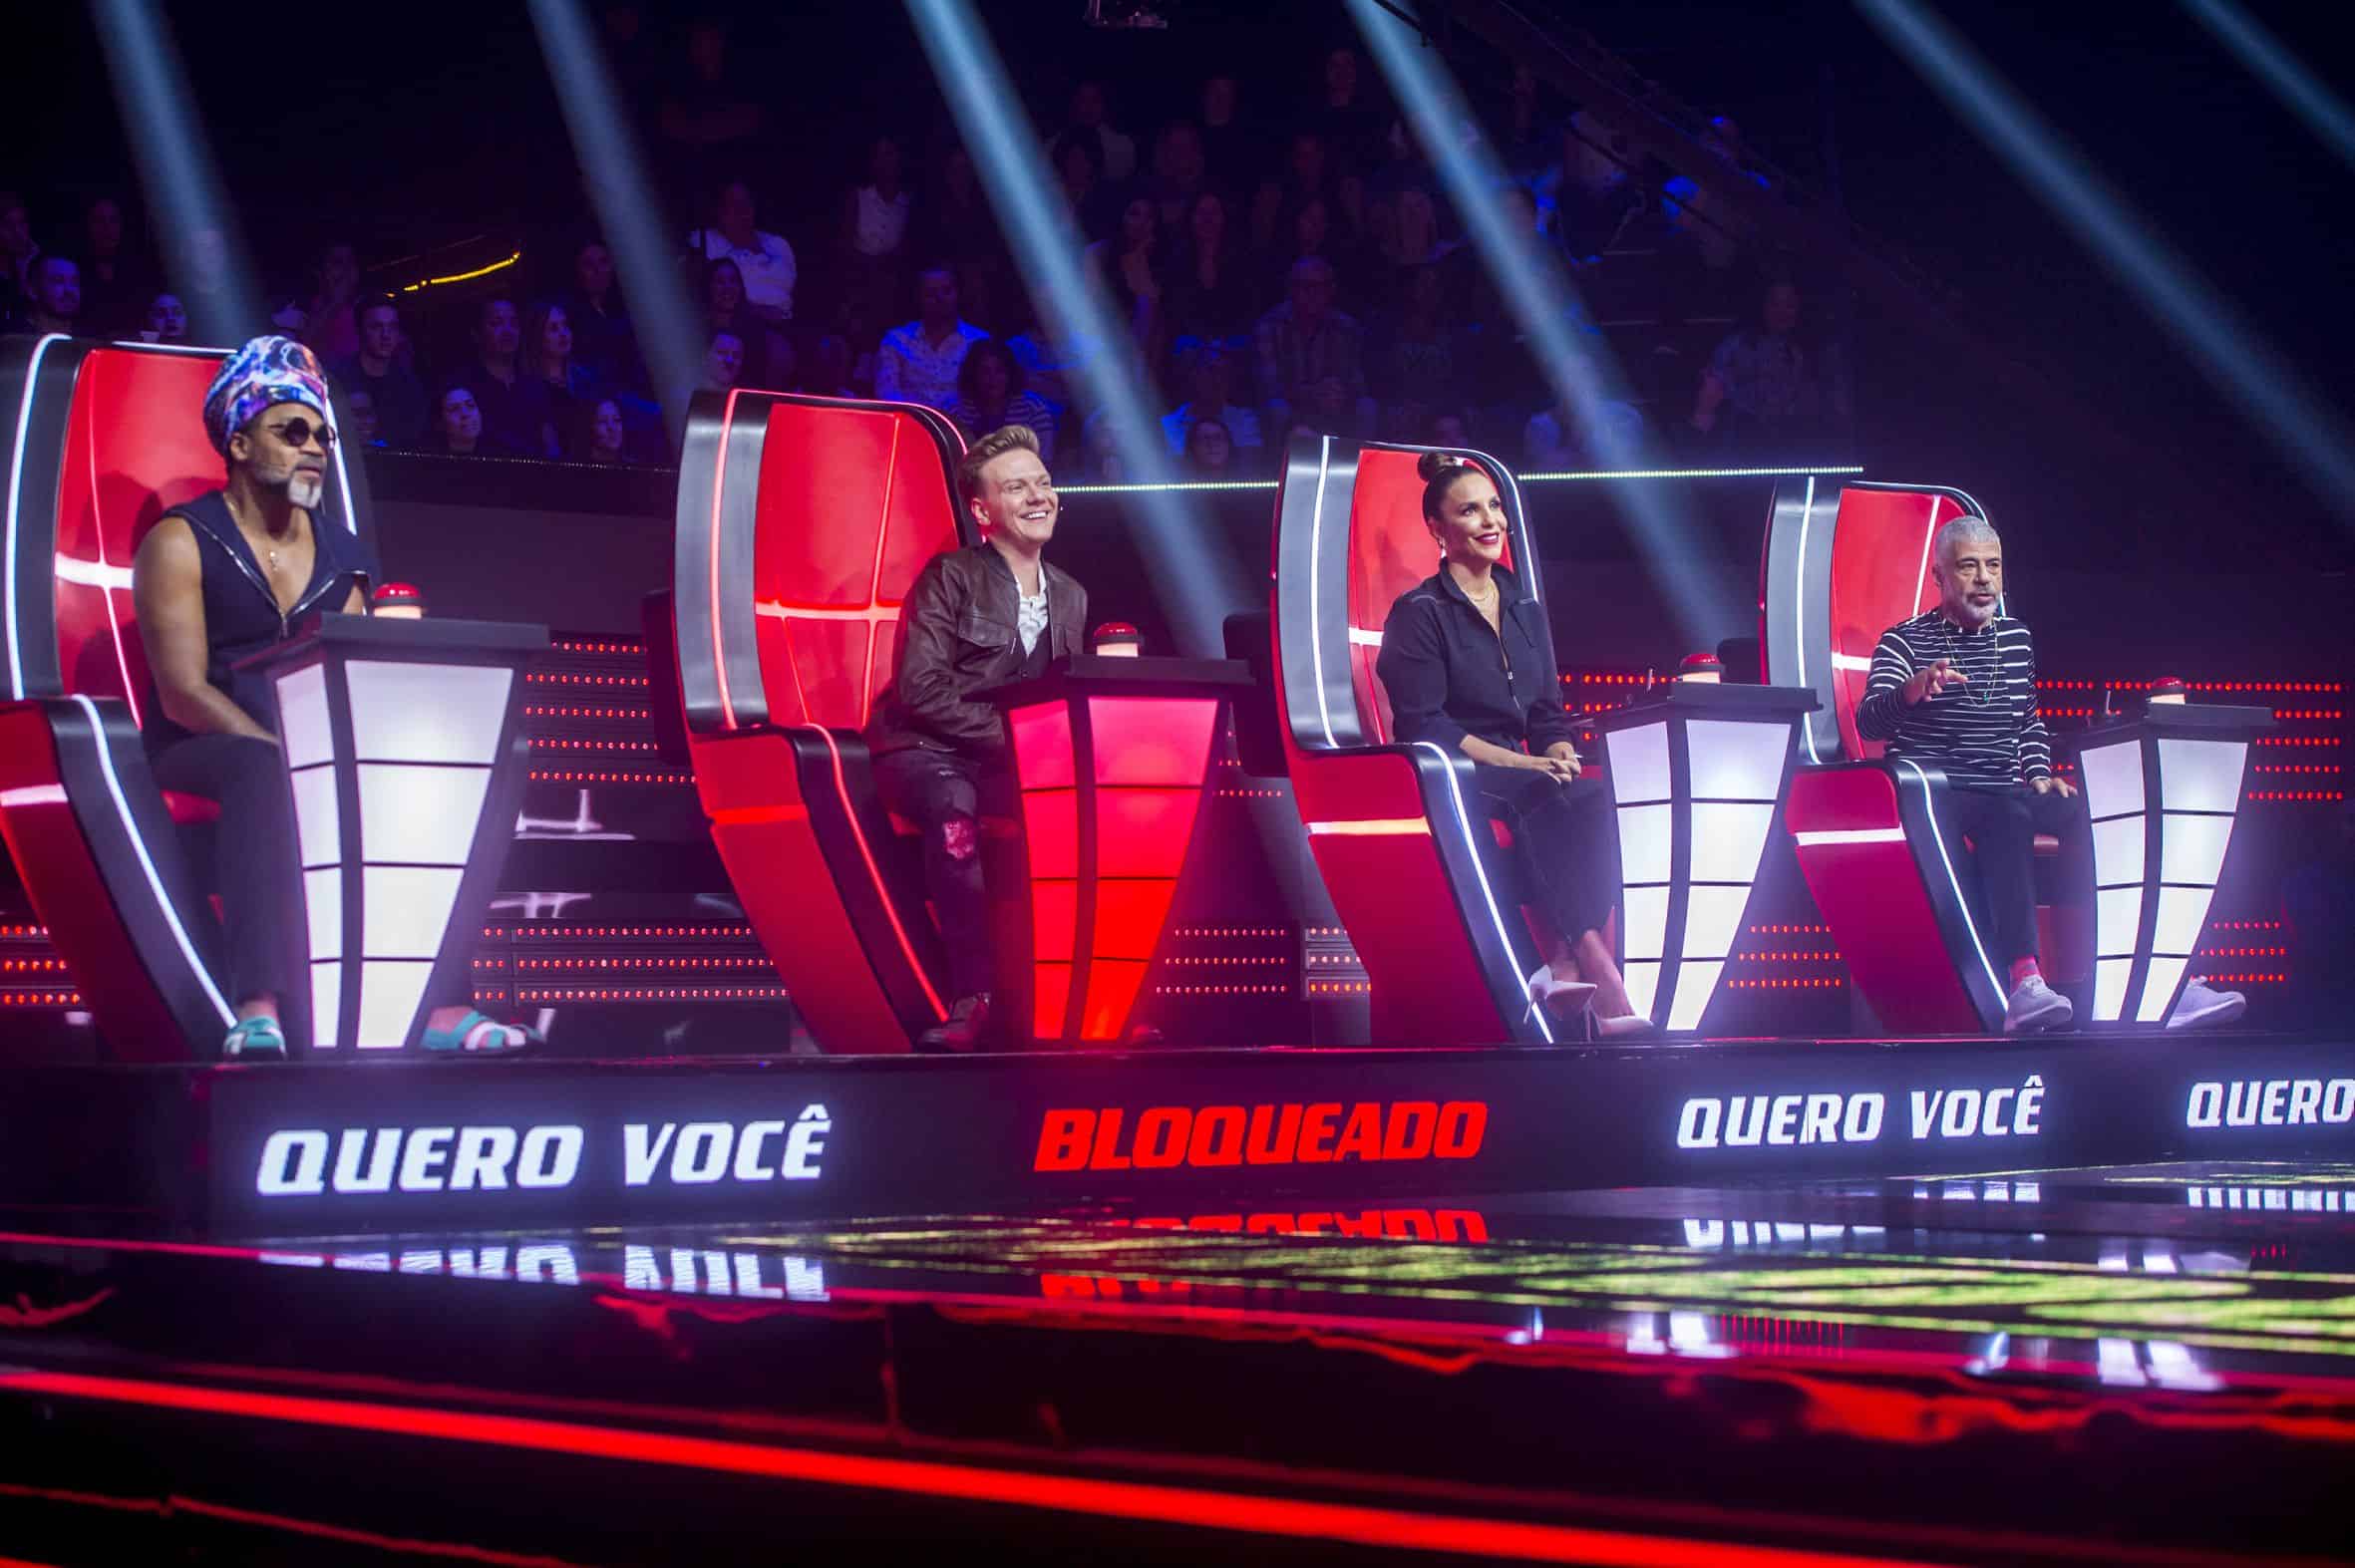 Audiência da TV: “The Voice Brasil” estreia bem no RJ e em SP